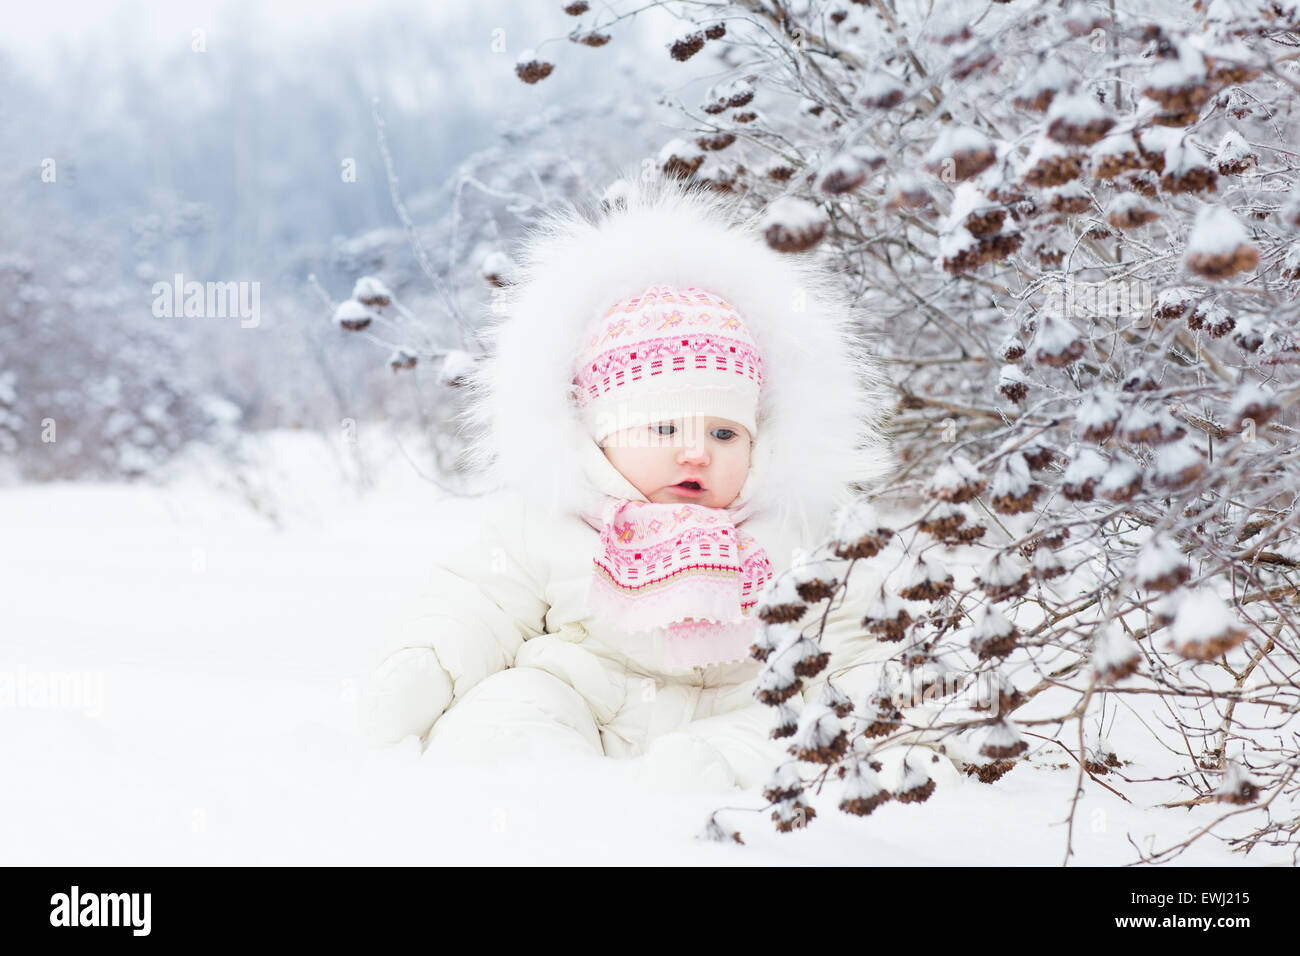 Magnifique petite fille jouer dans la neige Banque D'Images